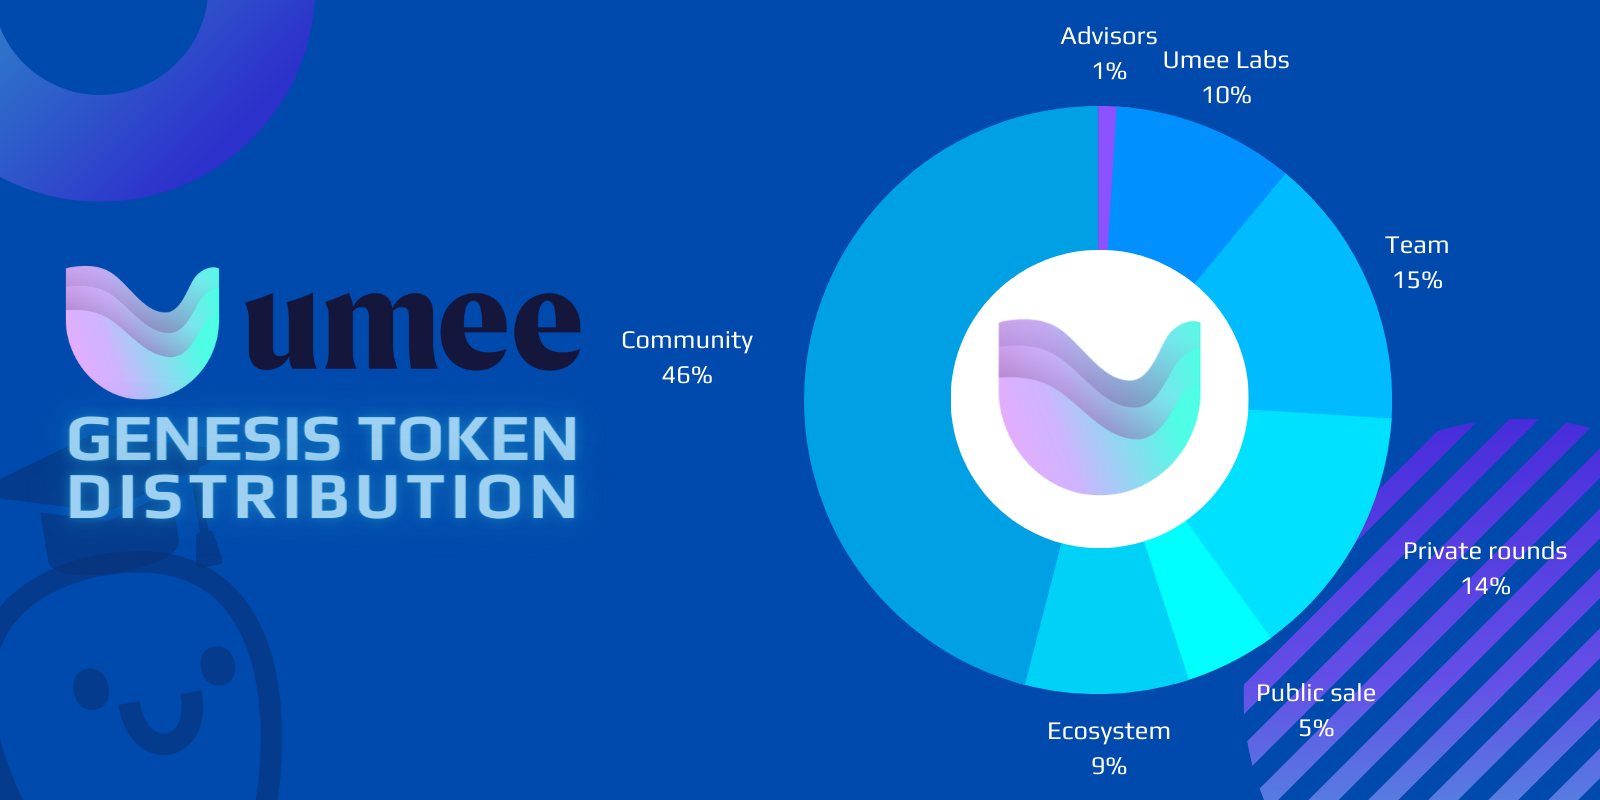 UMEE Token Genesis Distribution